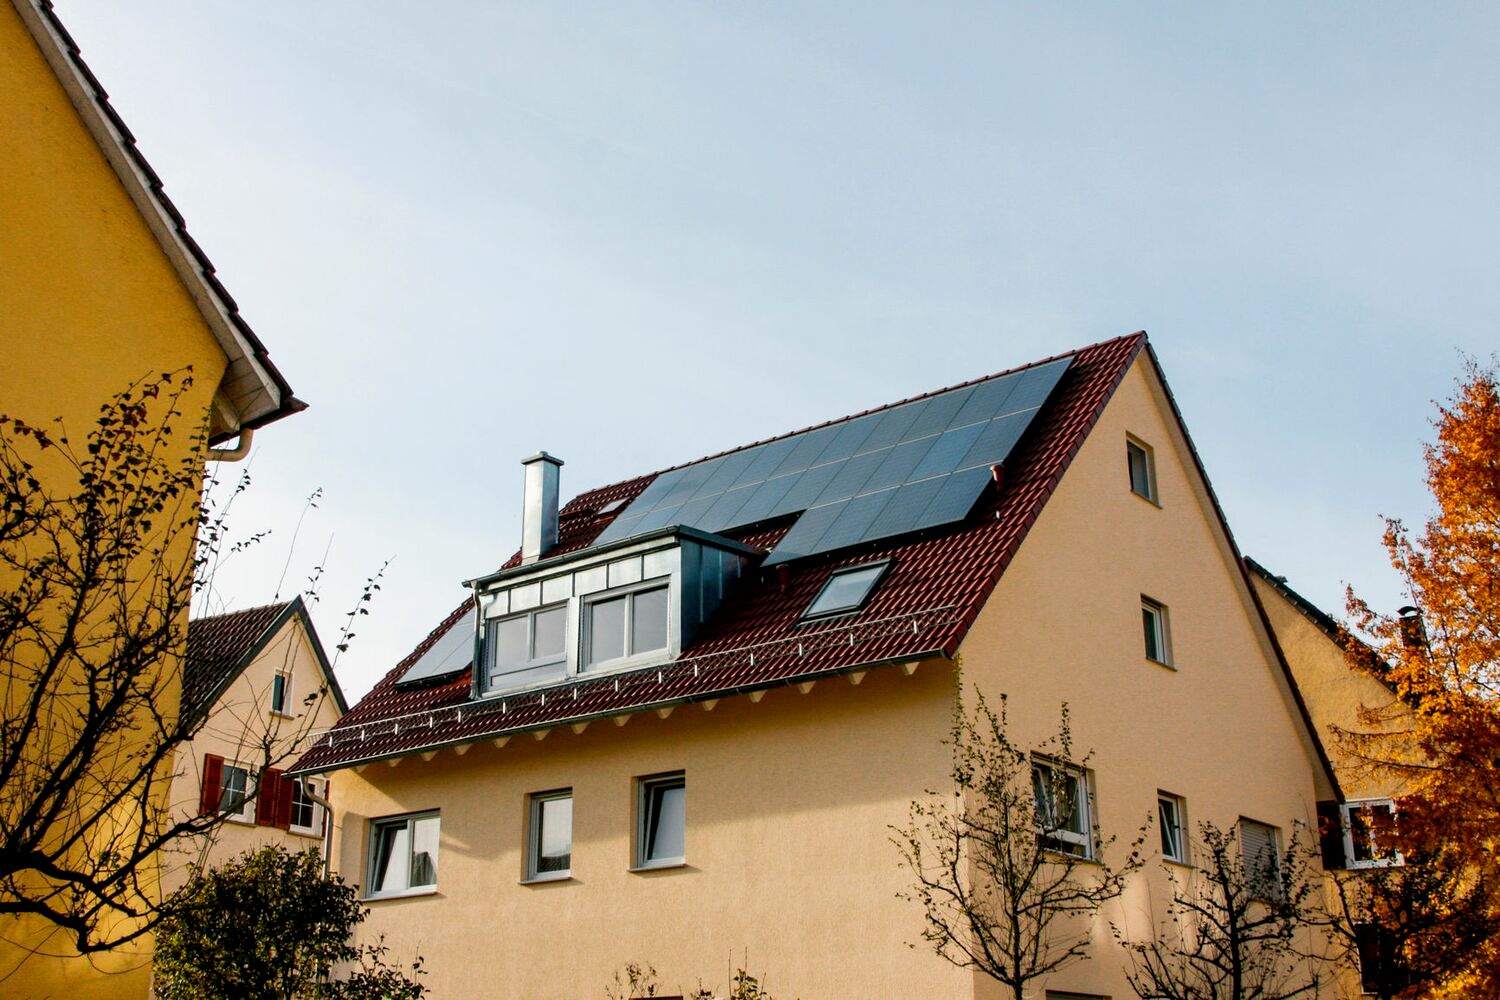 solar panel roof